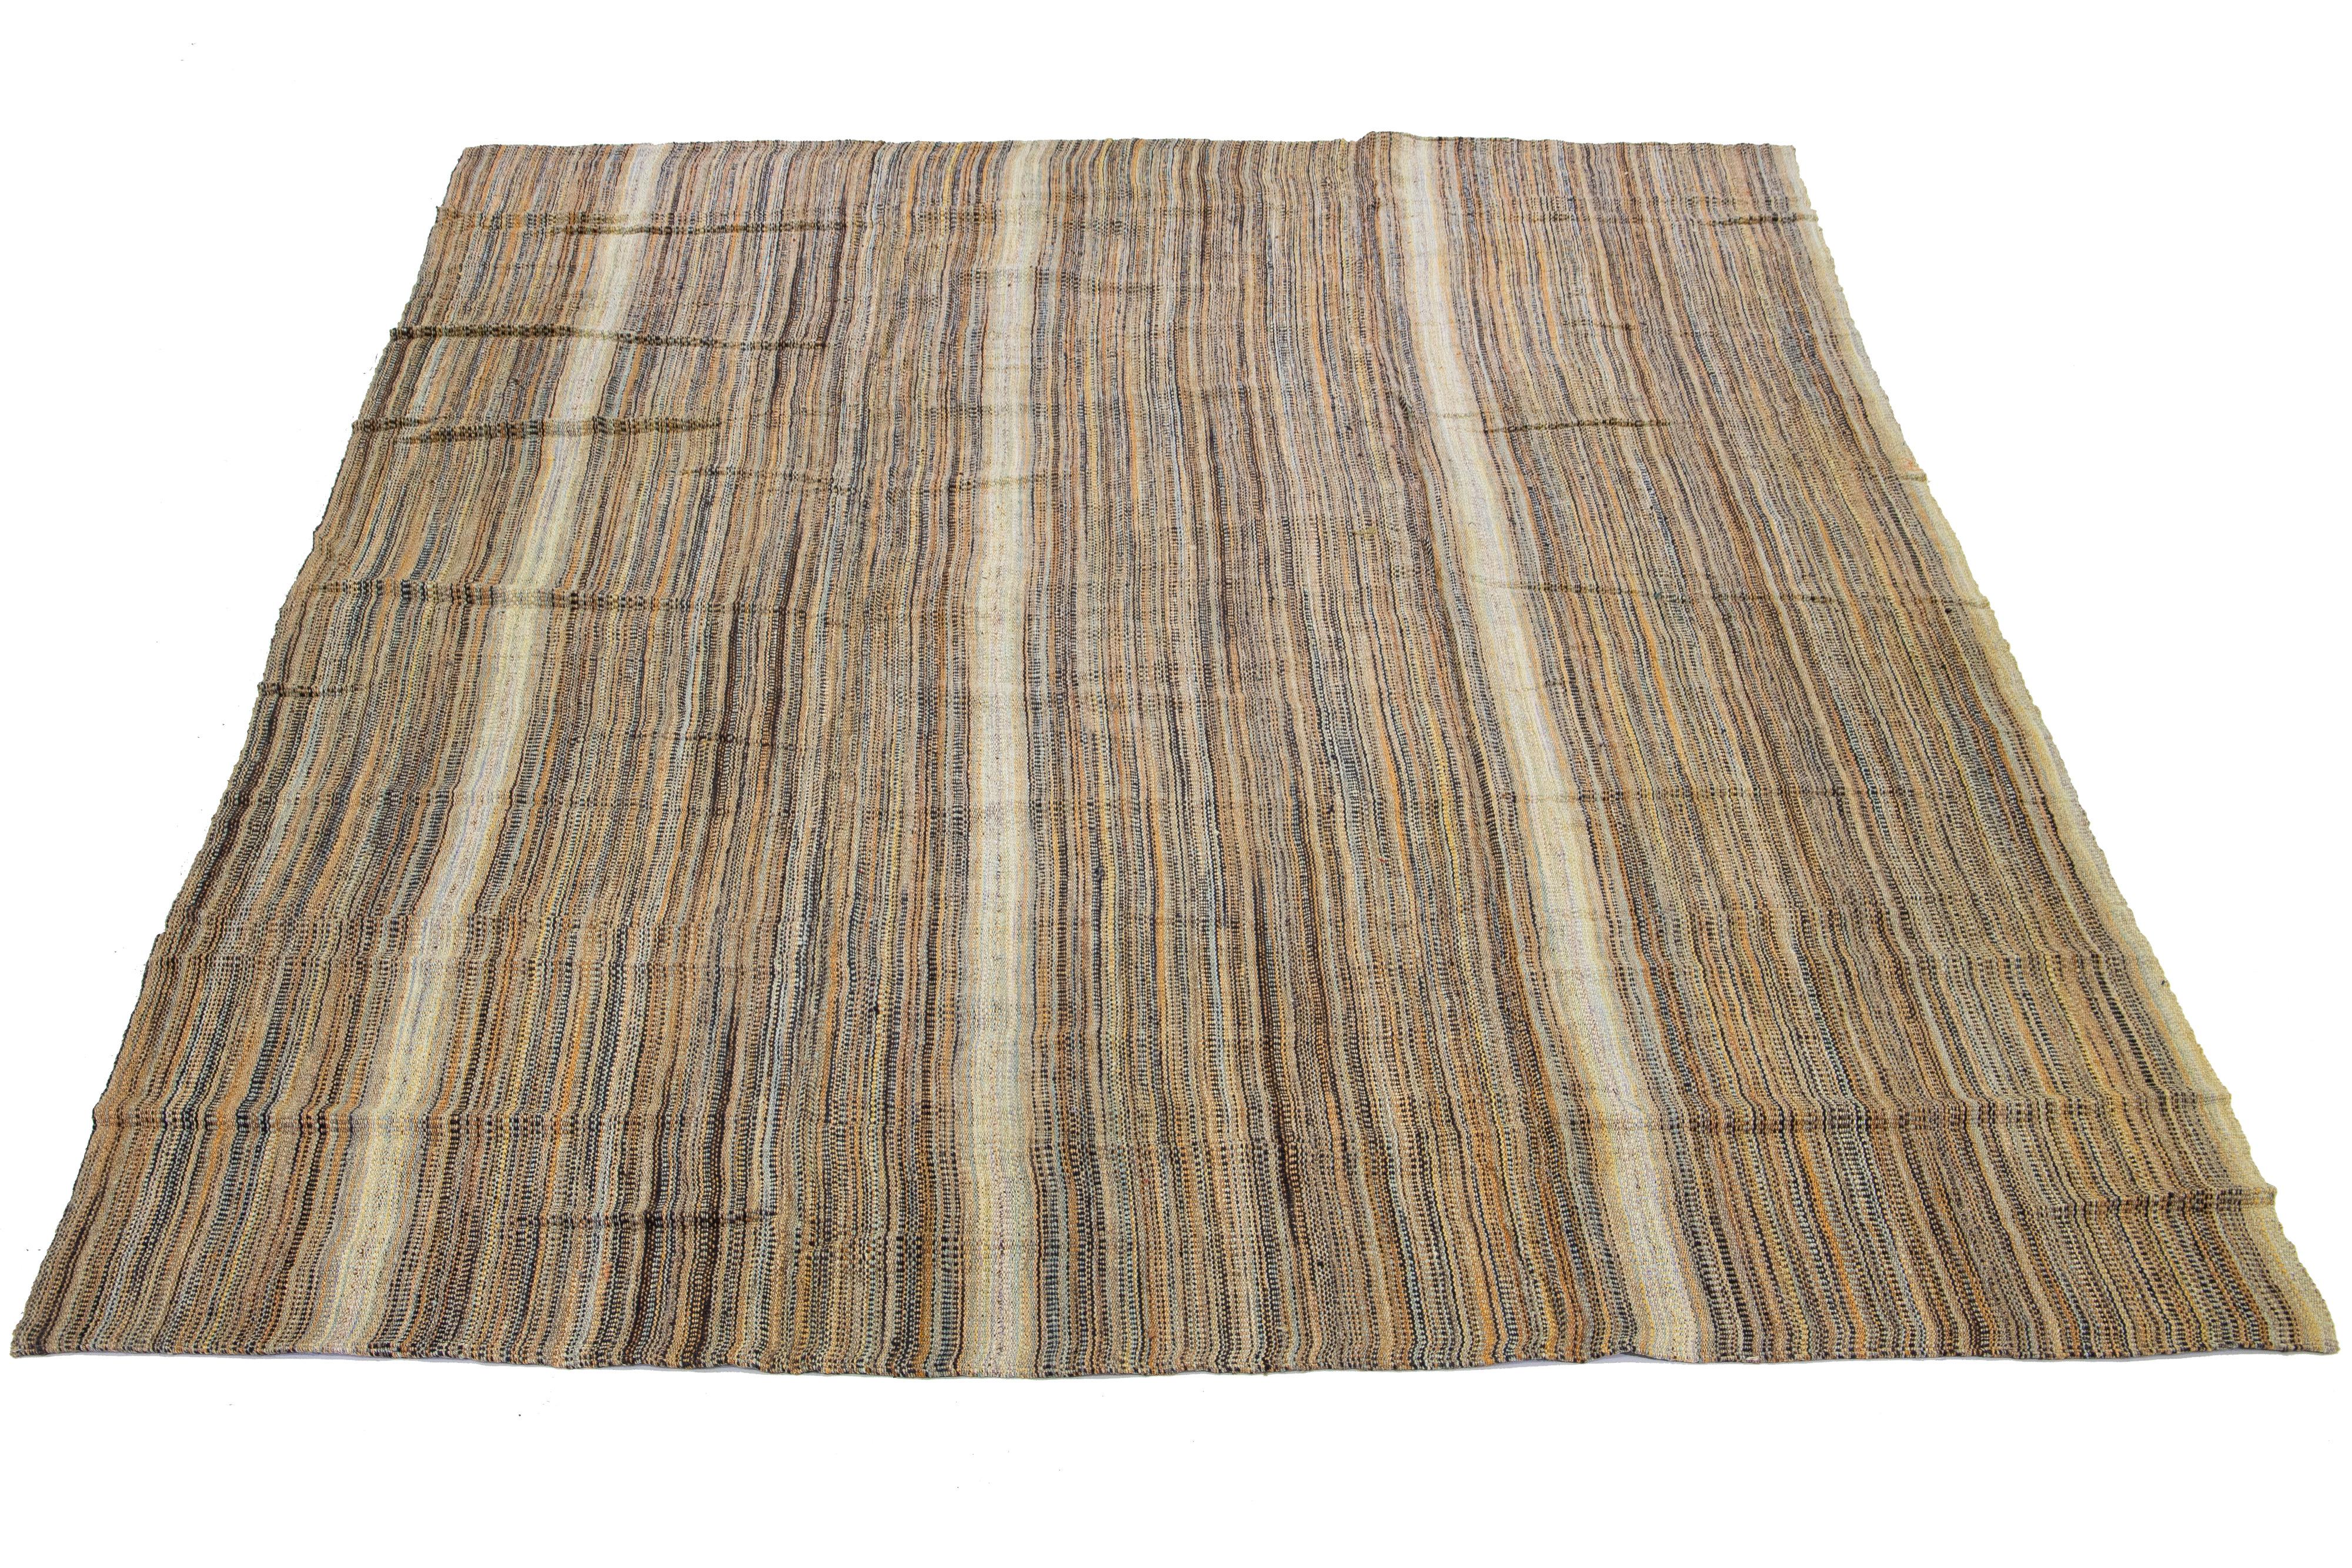 Ce tapis indien présente un tissage plat contemporain de type Rug & Kilim, réalisé en laine. Le tapis présente un élégant motif rayé dans les tons beige, tan et marron.

Ce tapis mesure 11'8